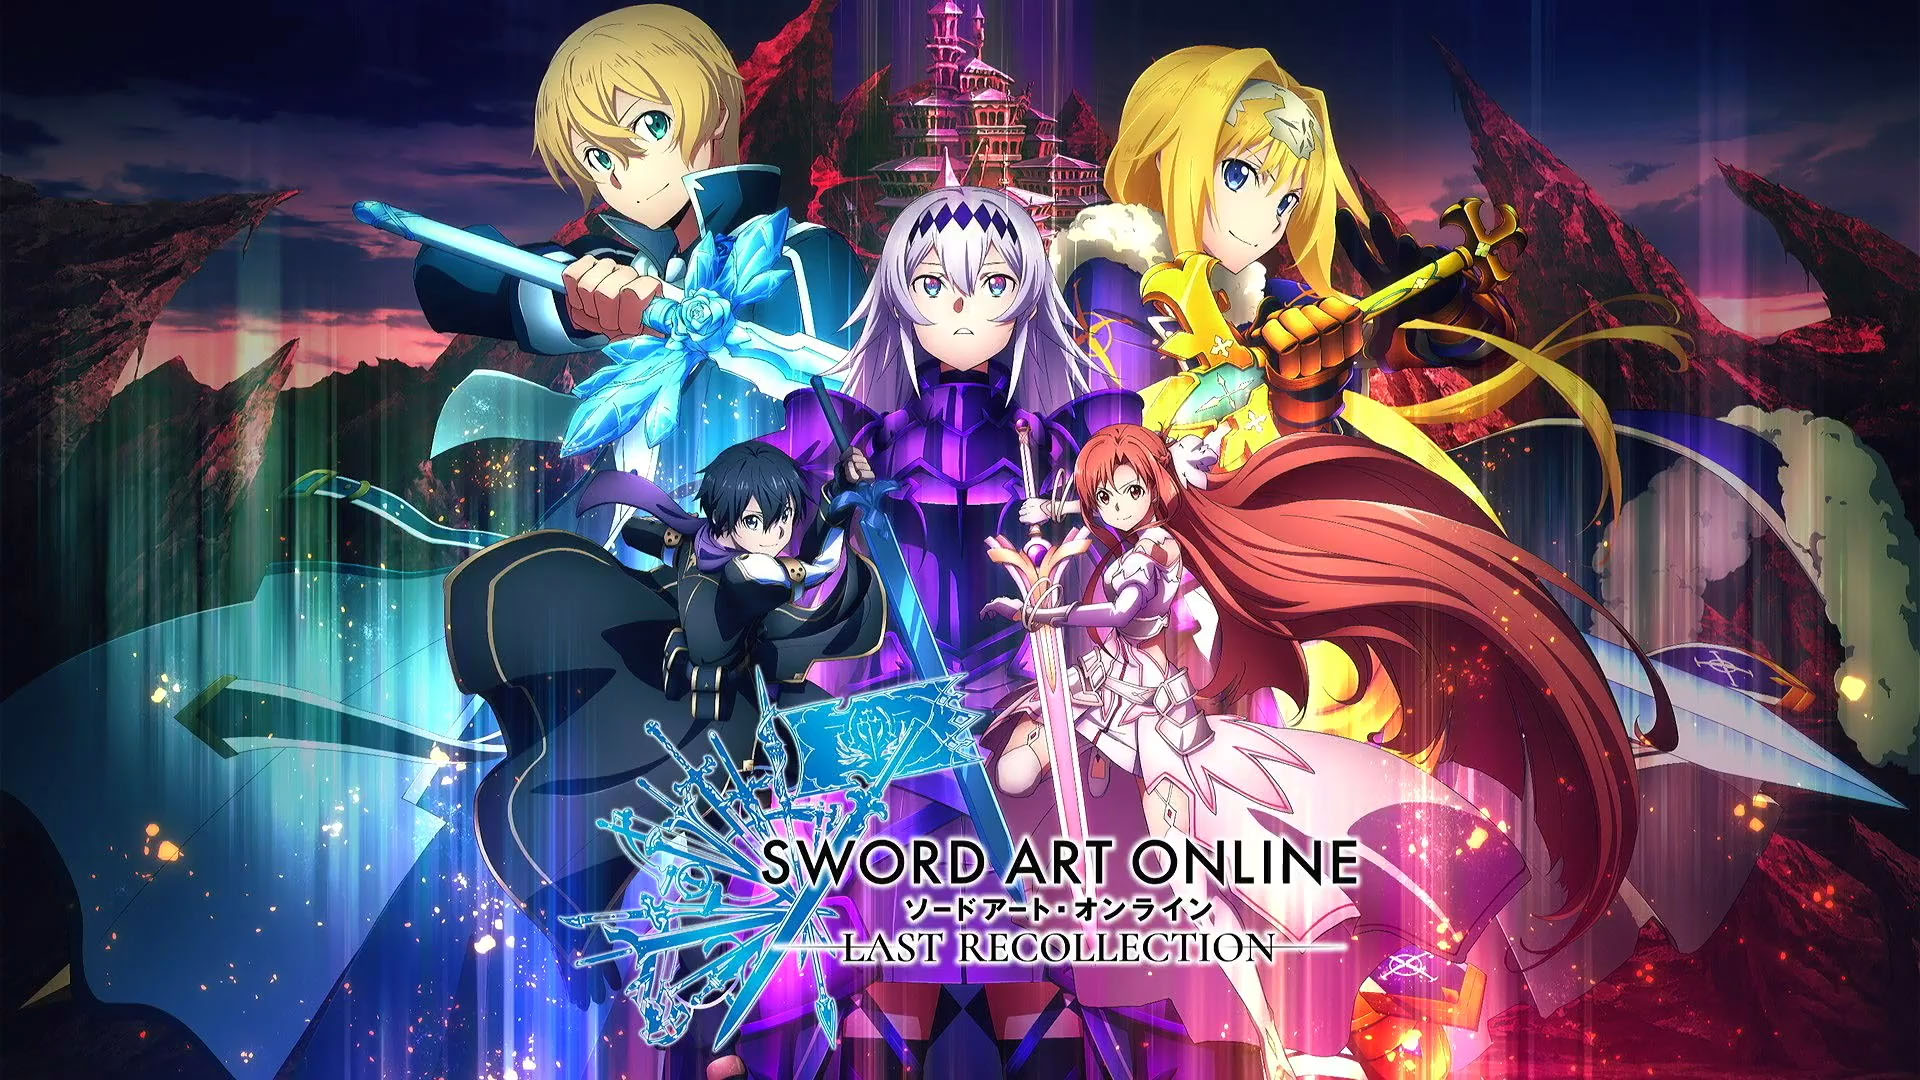 Sword art online last recollection 2